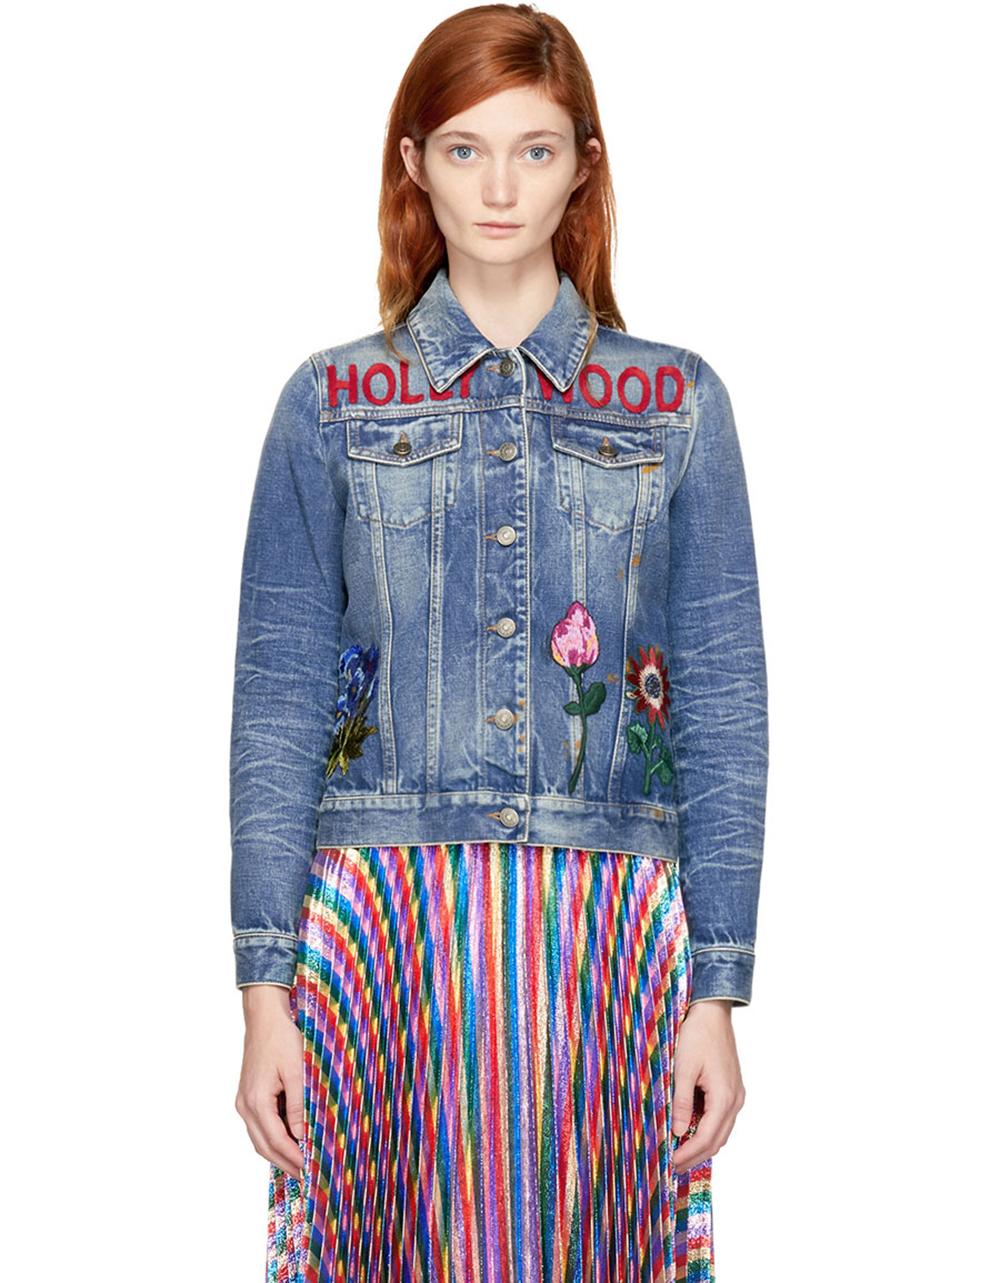 Gucci Jeansjacke für Sammler mit HOLLYWOOD-Slogan und Stickereien von Rabbit & Flora.
- Boutique-Preis 3.200$
Größenbezeichnung 42 FR. Der Zustand ist tadellos. 